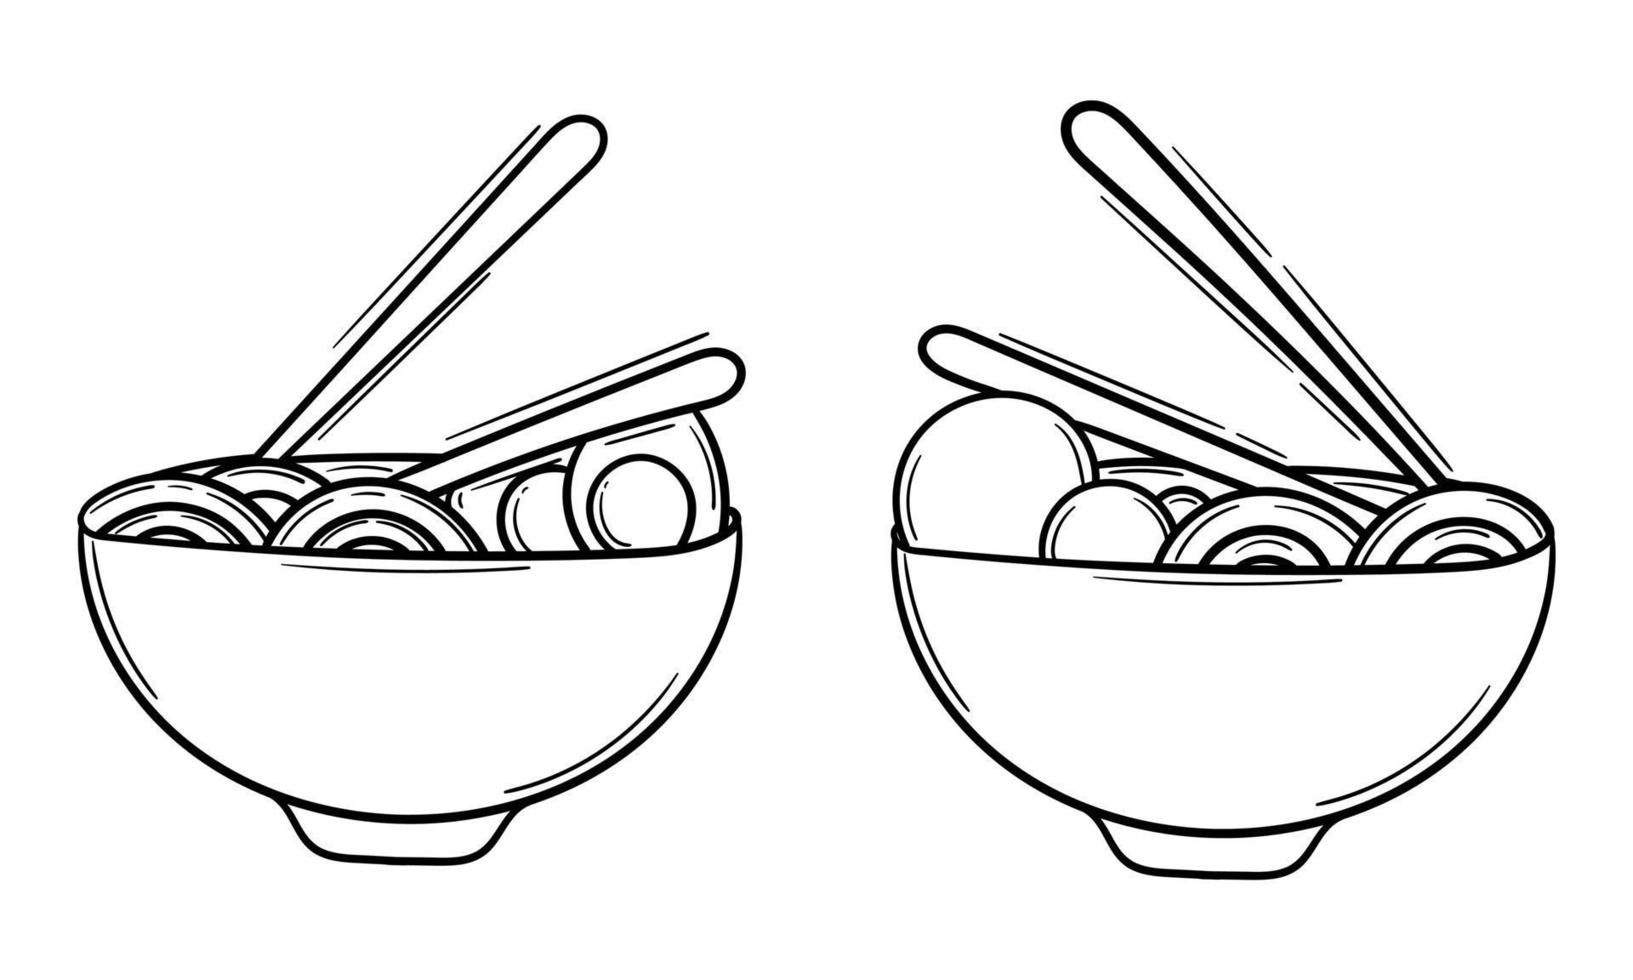 hand dragen illustration av spaghetti och ägg, och spaghetti och köttbullar vektor